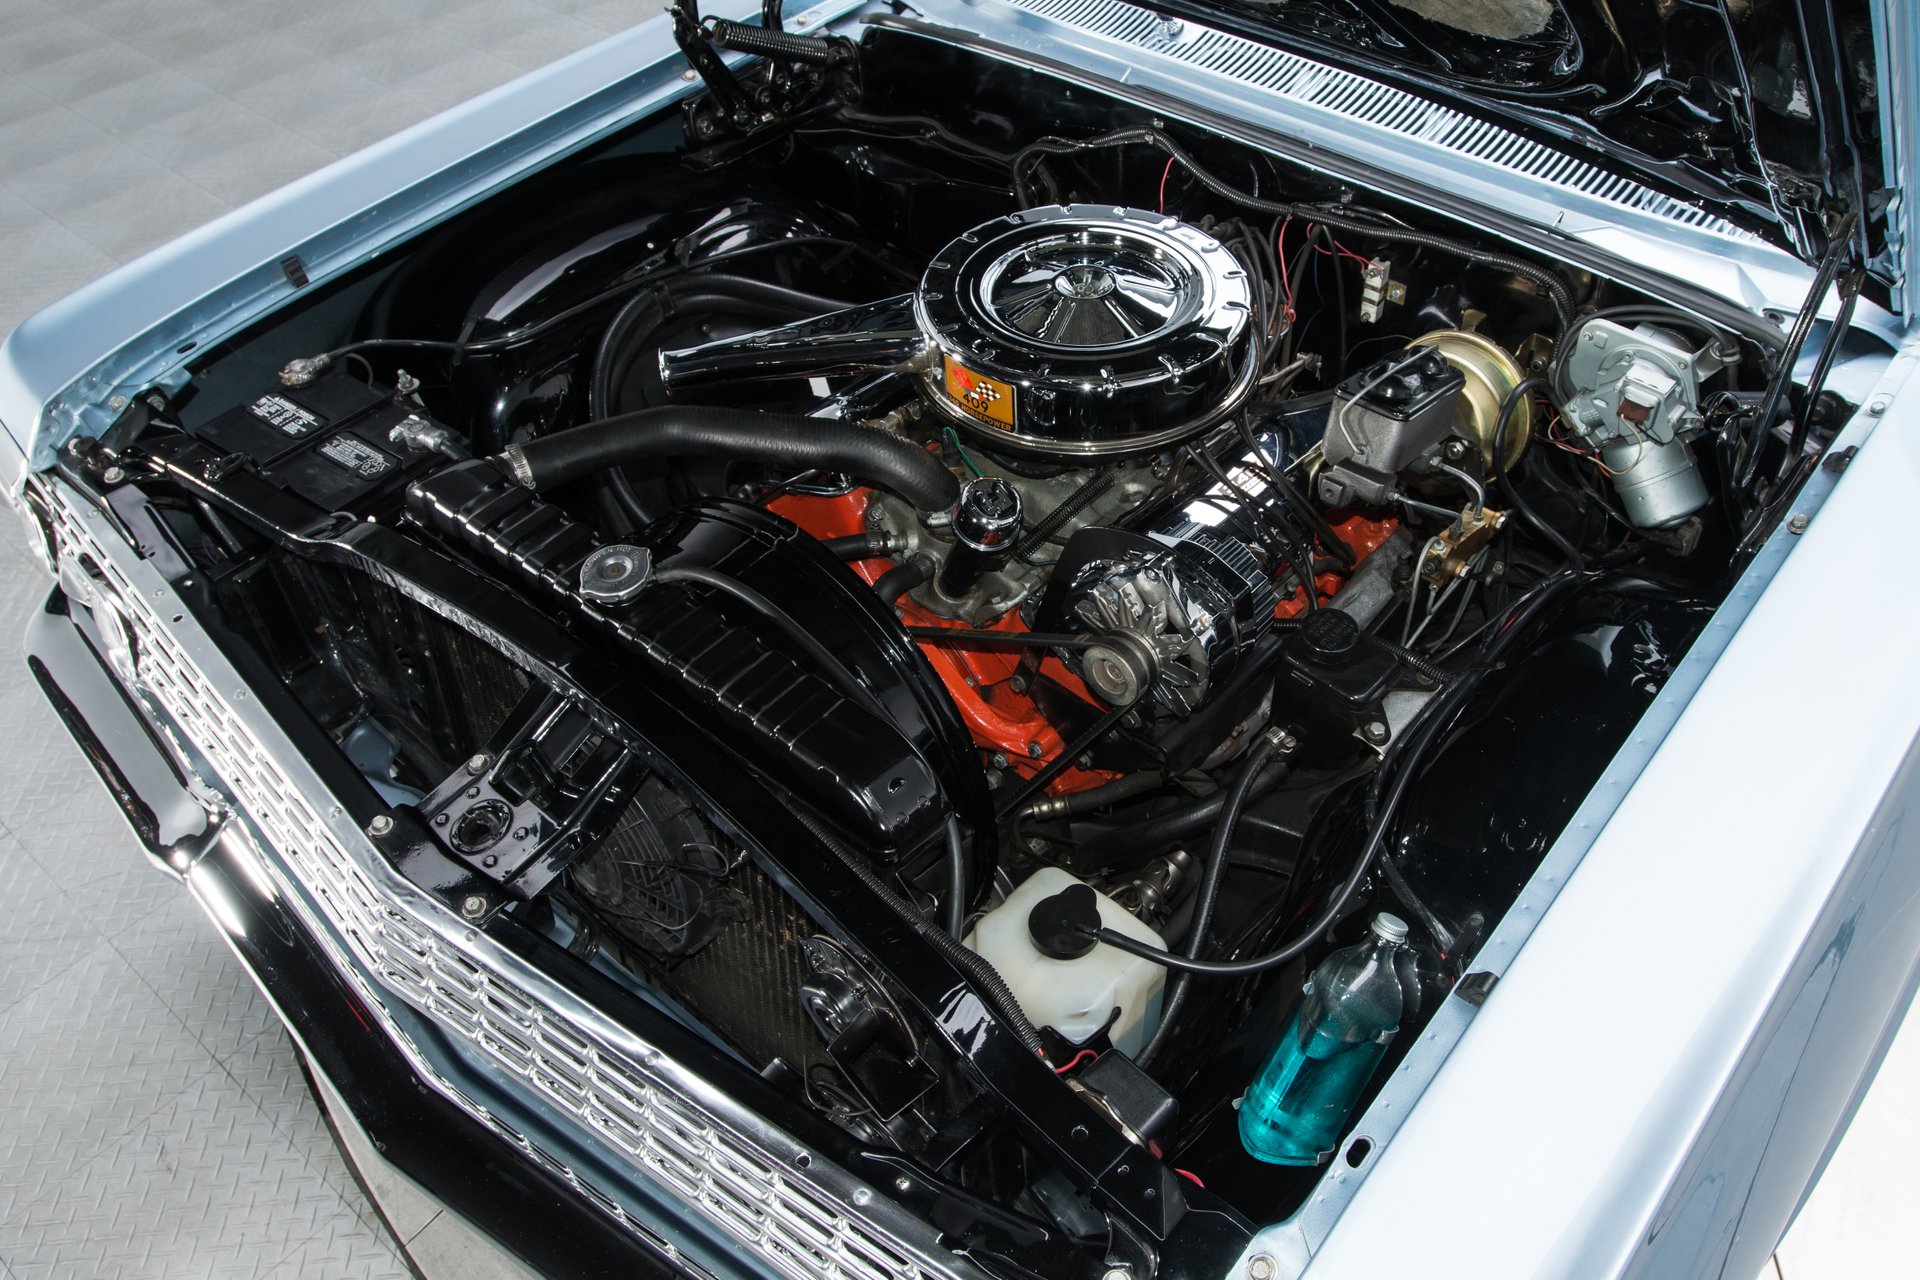 1963 chevrolet impala